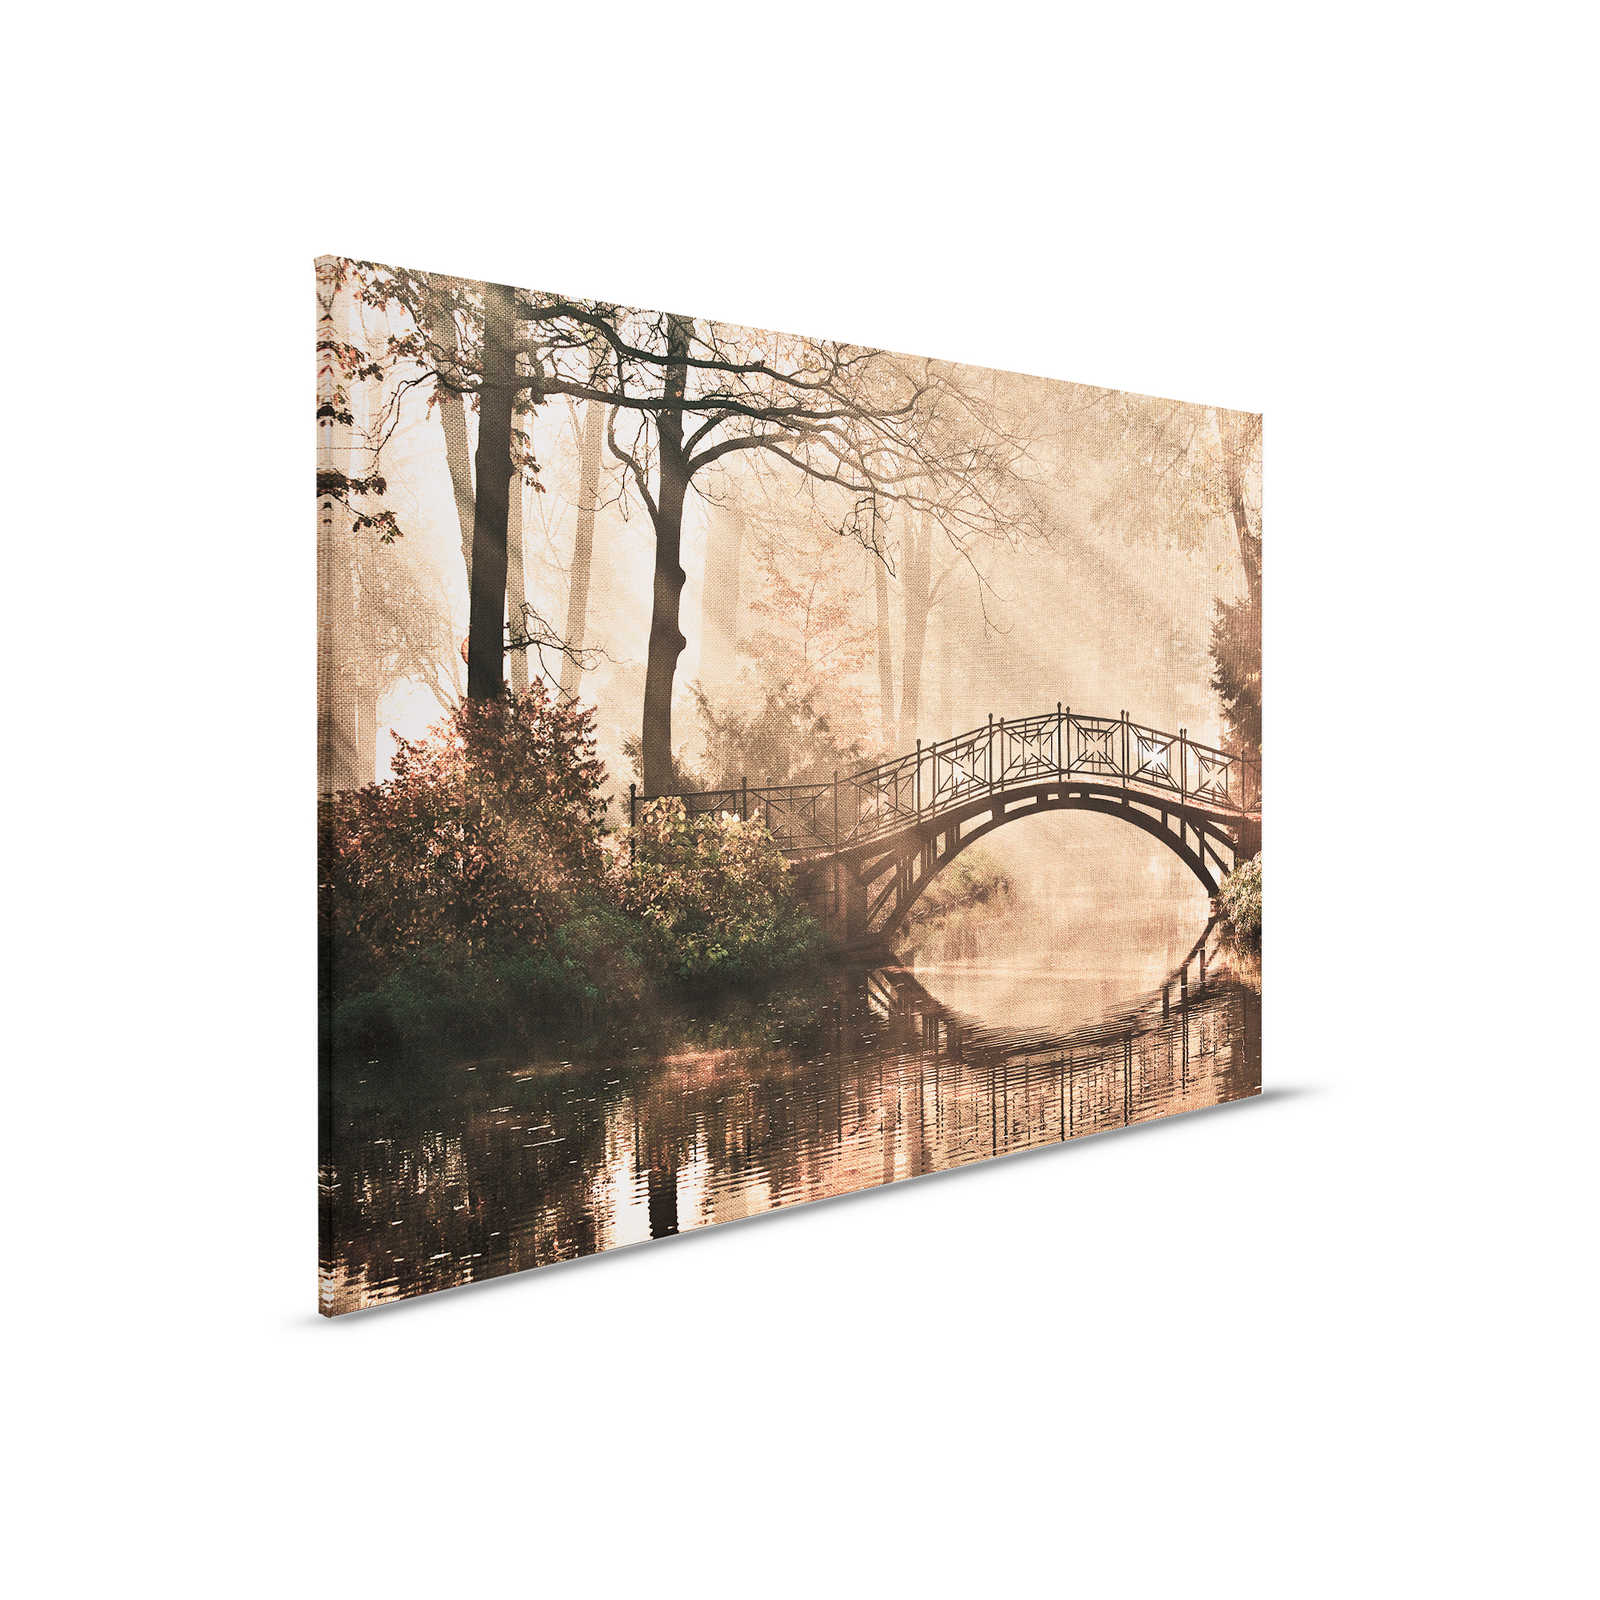 Canvas met Loofbos met rivier & brug - 0,90 m x 0,60 m
